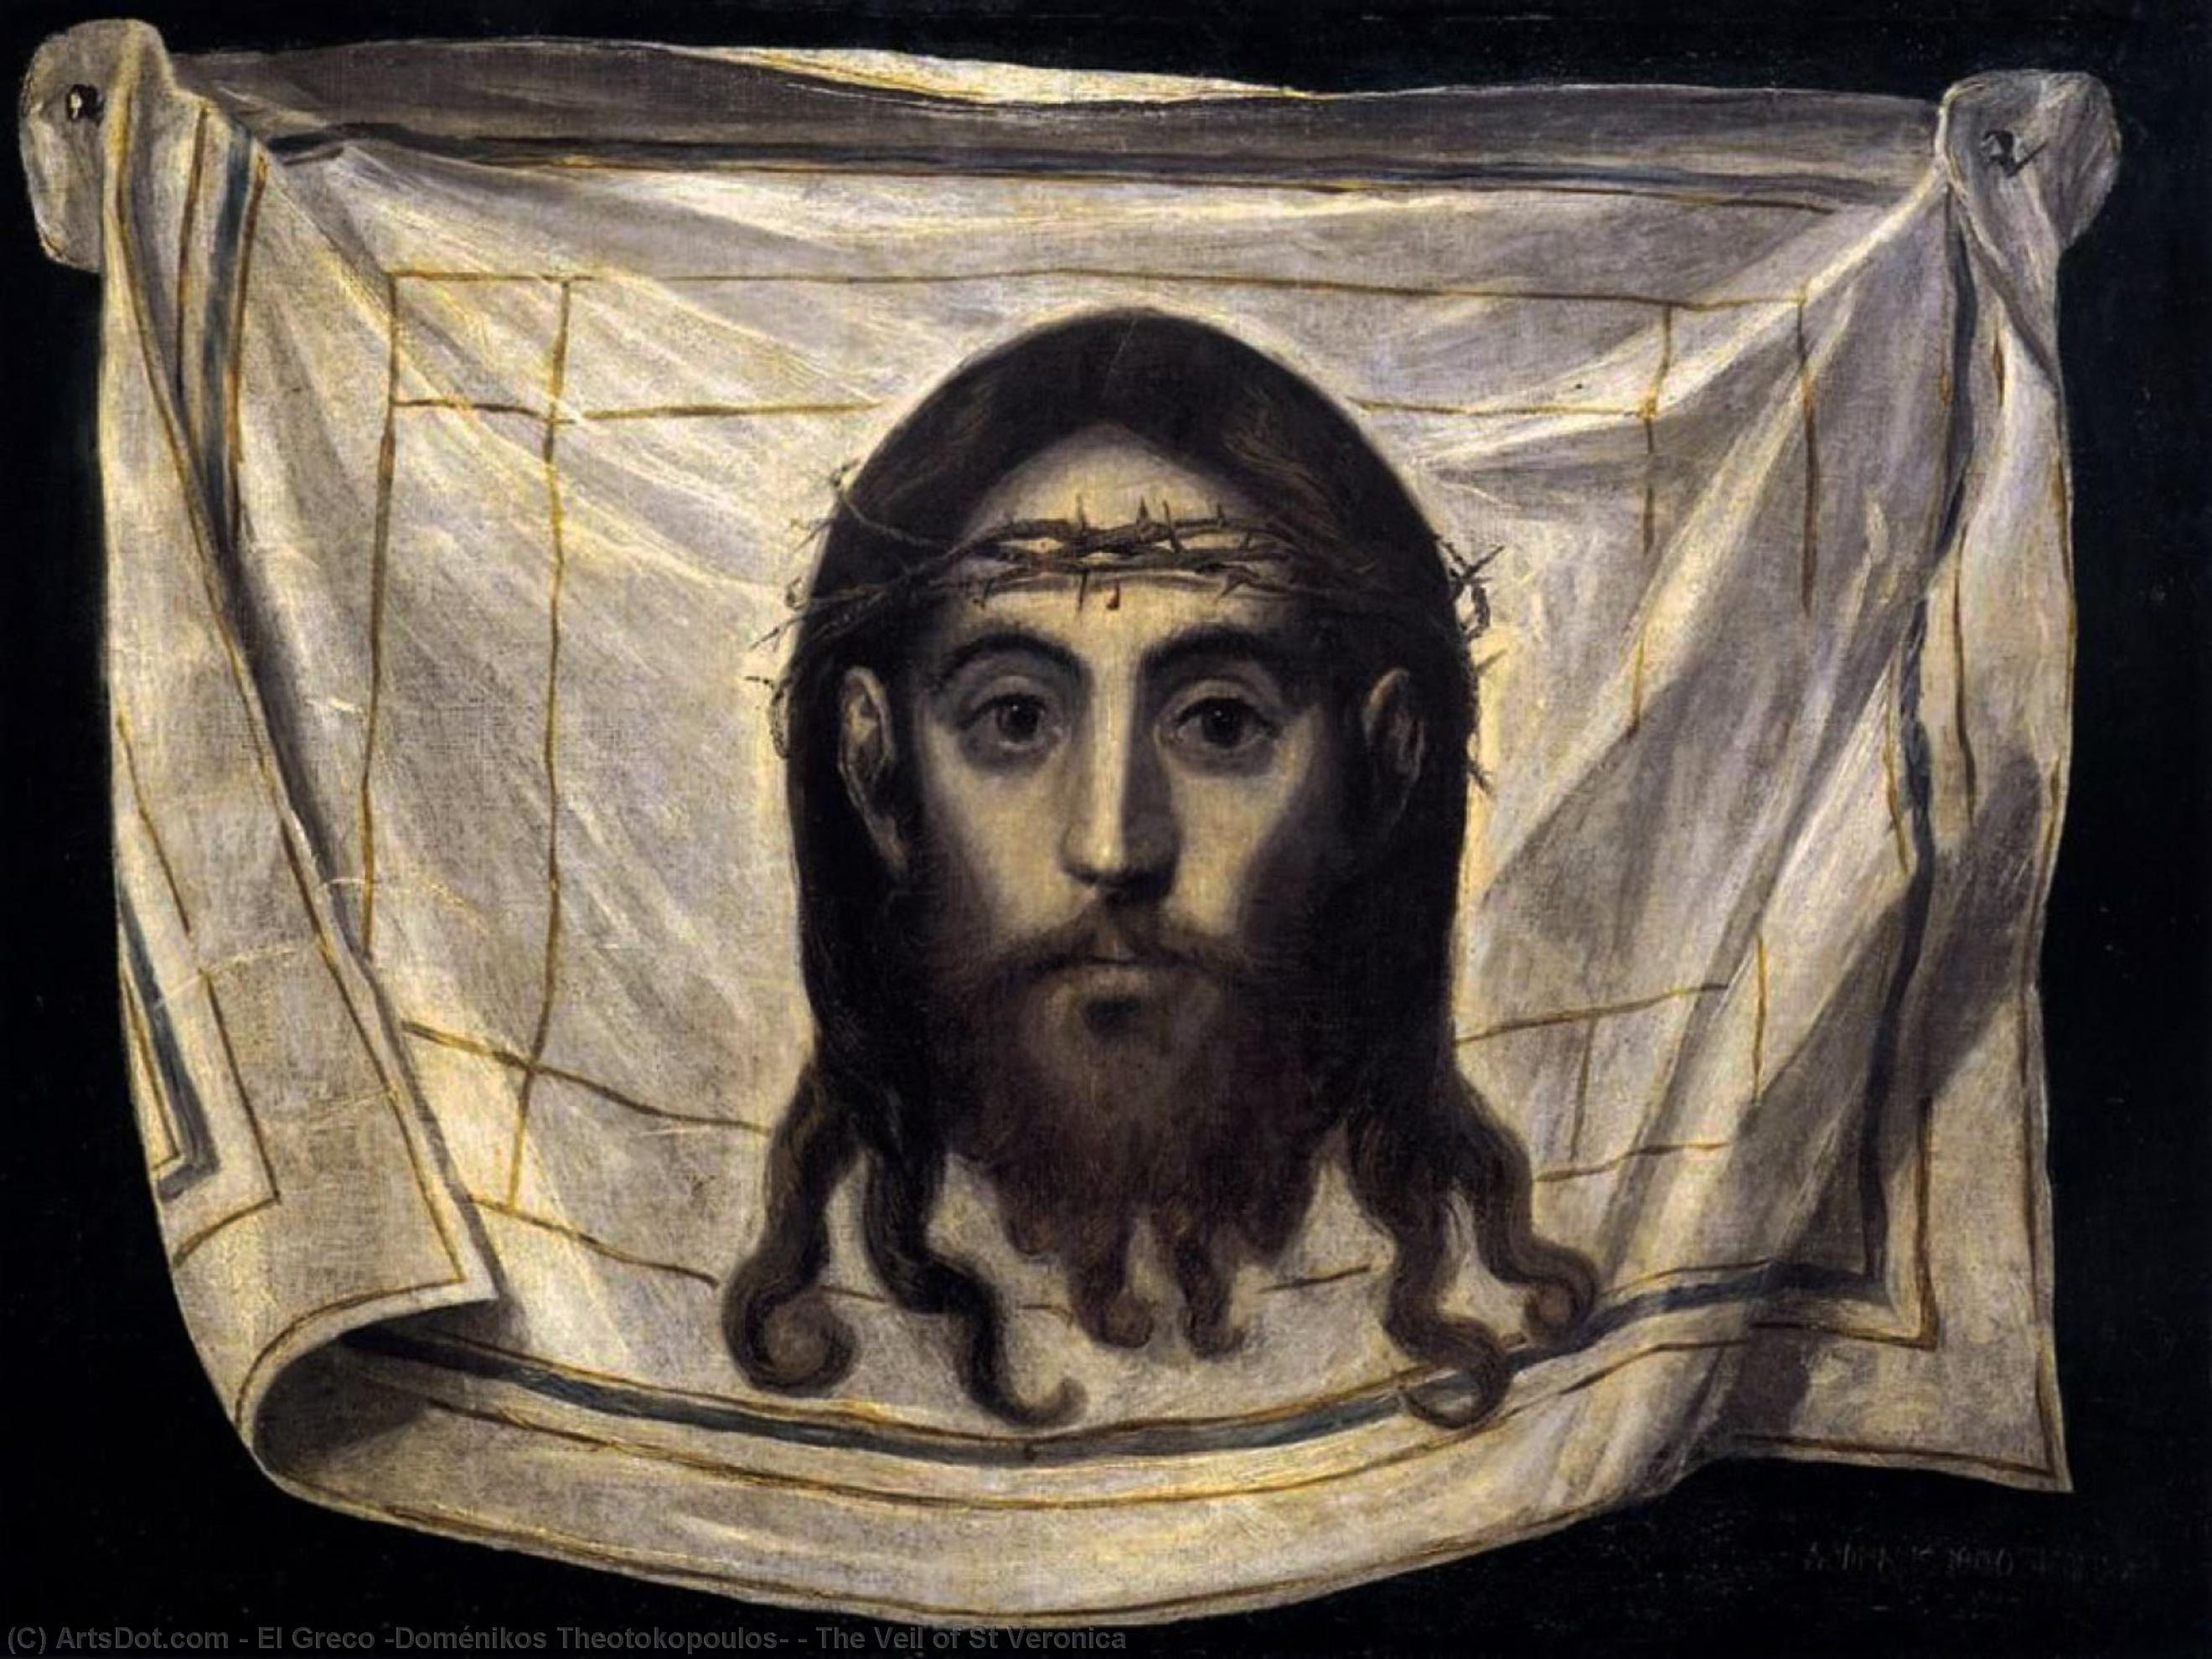 WikiOO.org - Encyclopedia of Fine Arts - Malba, Artwork El Greco (Doménikos Theotokopoulos) - The Veil of St Veronica